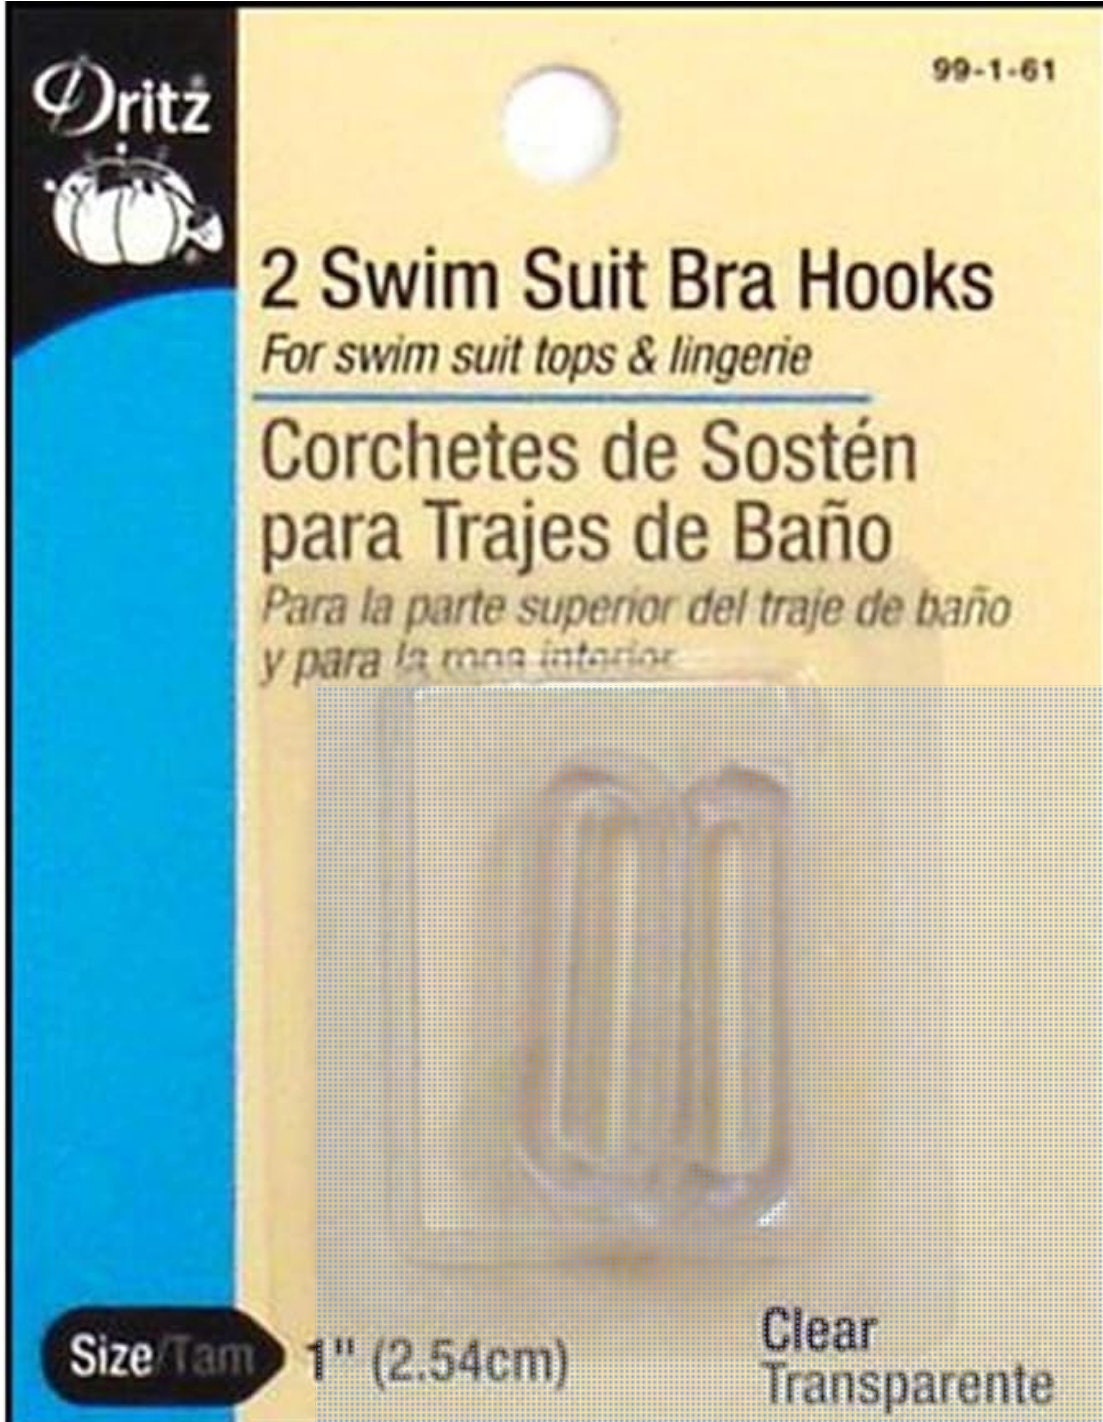 Dritz Swim Suit Bra Hooks / Pair / 1 Inch 